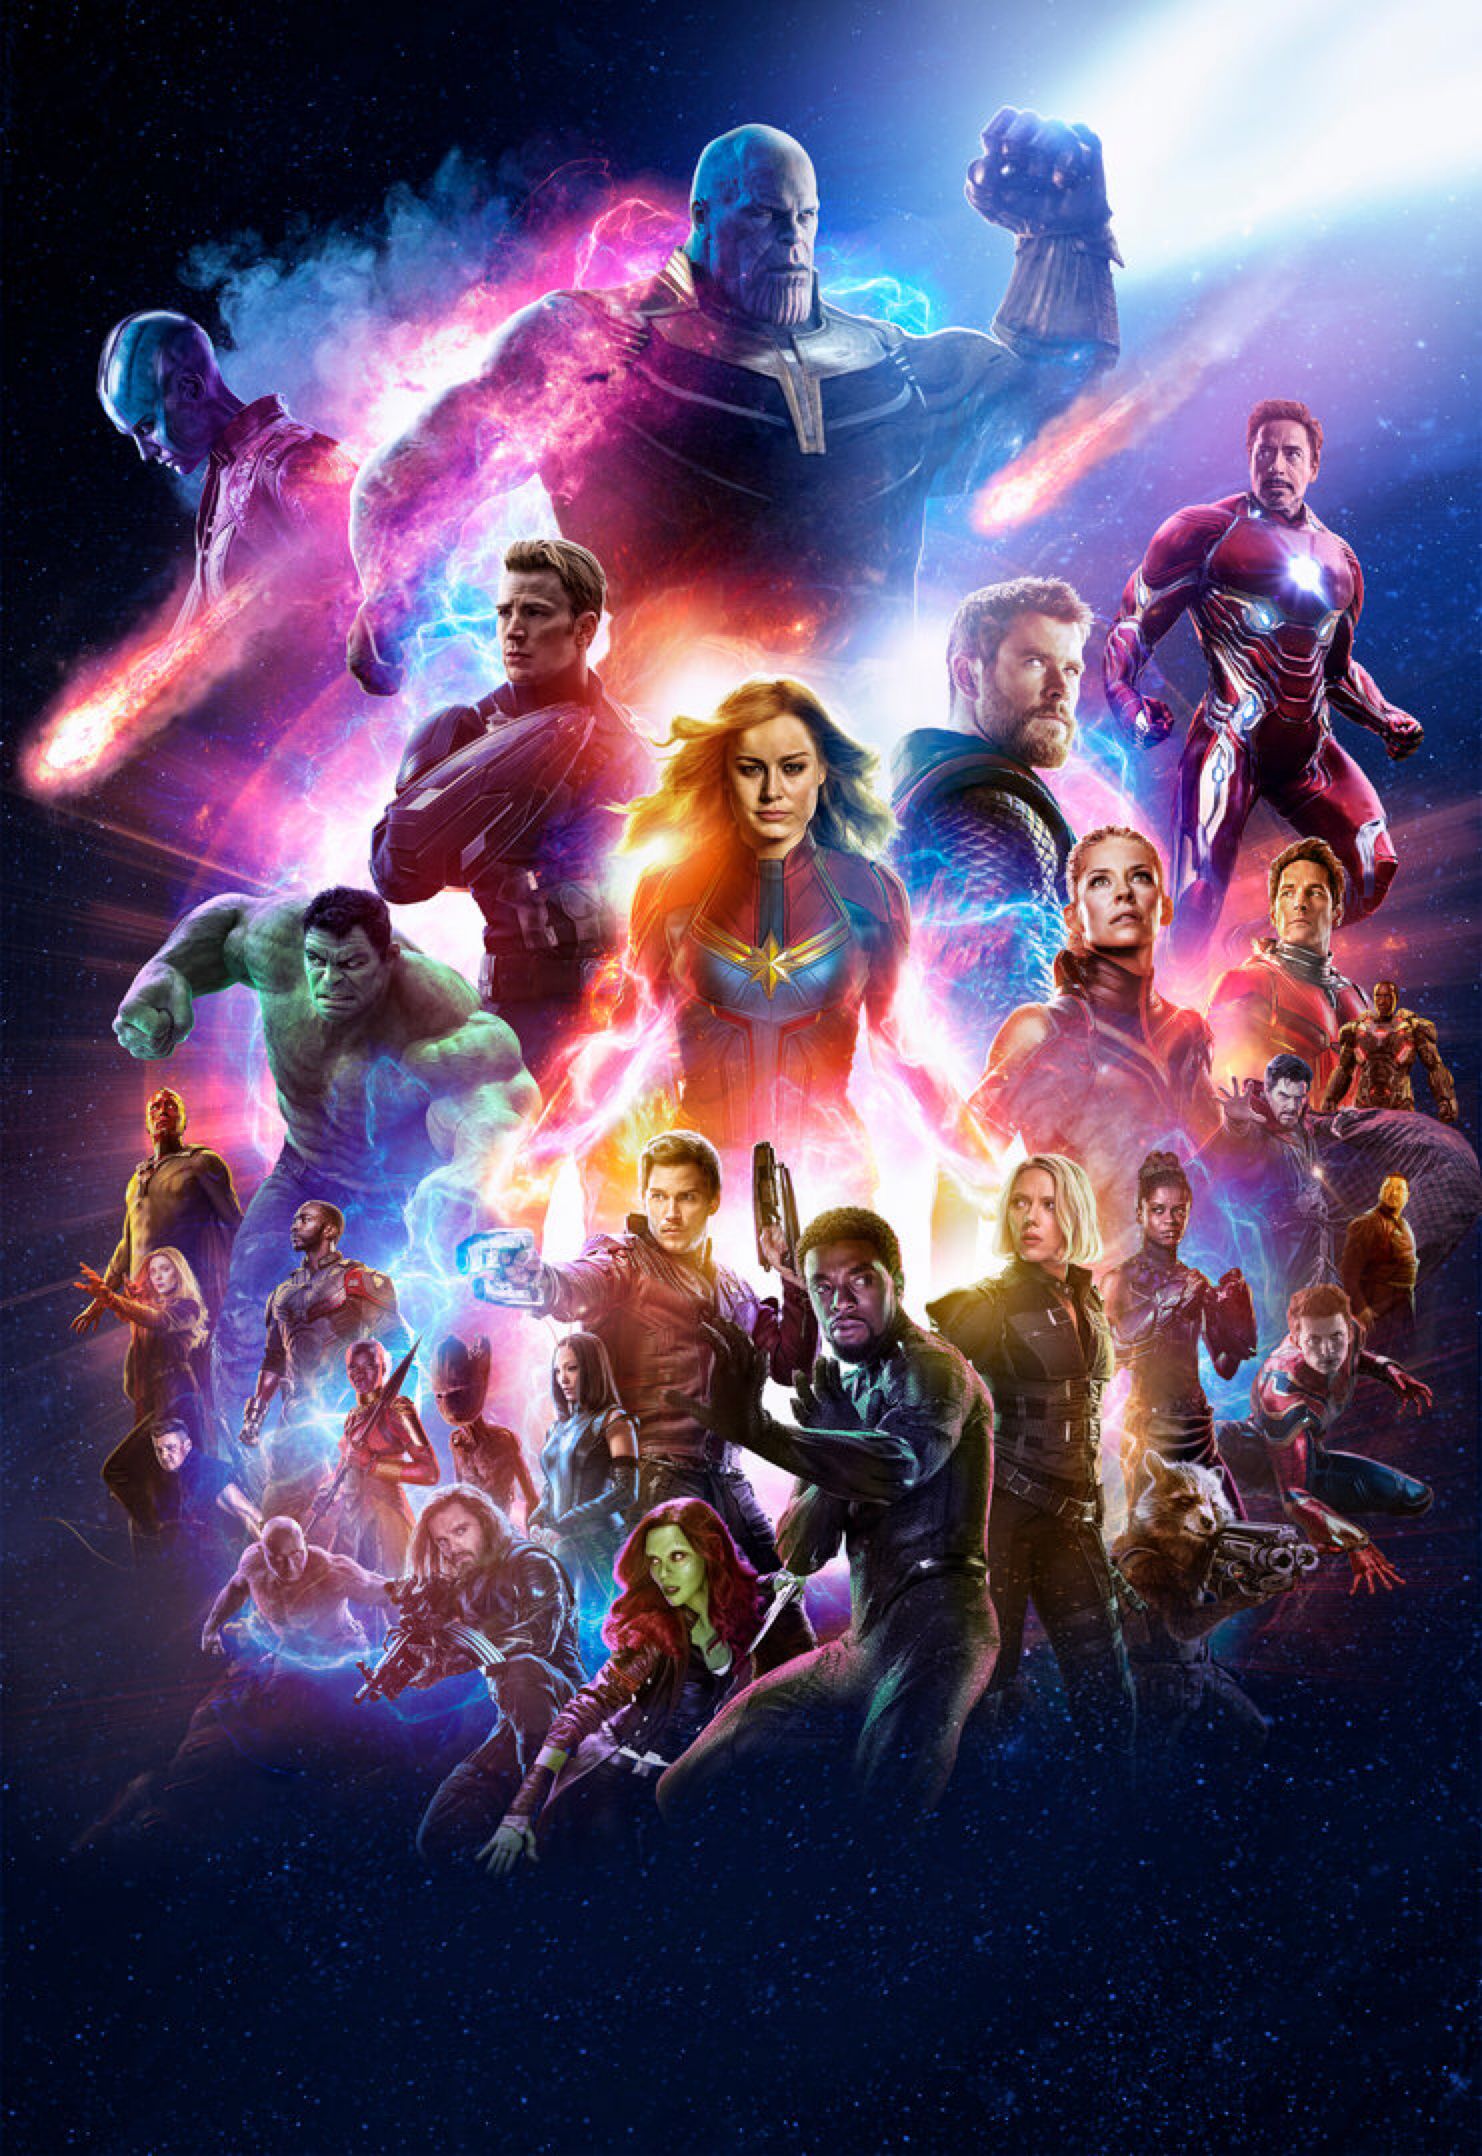 Marvel's Avengers: Endgame Wallpaper